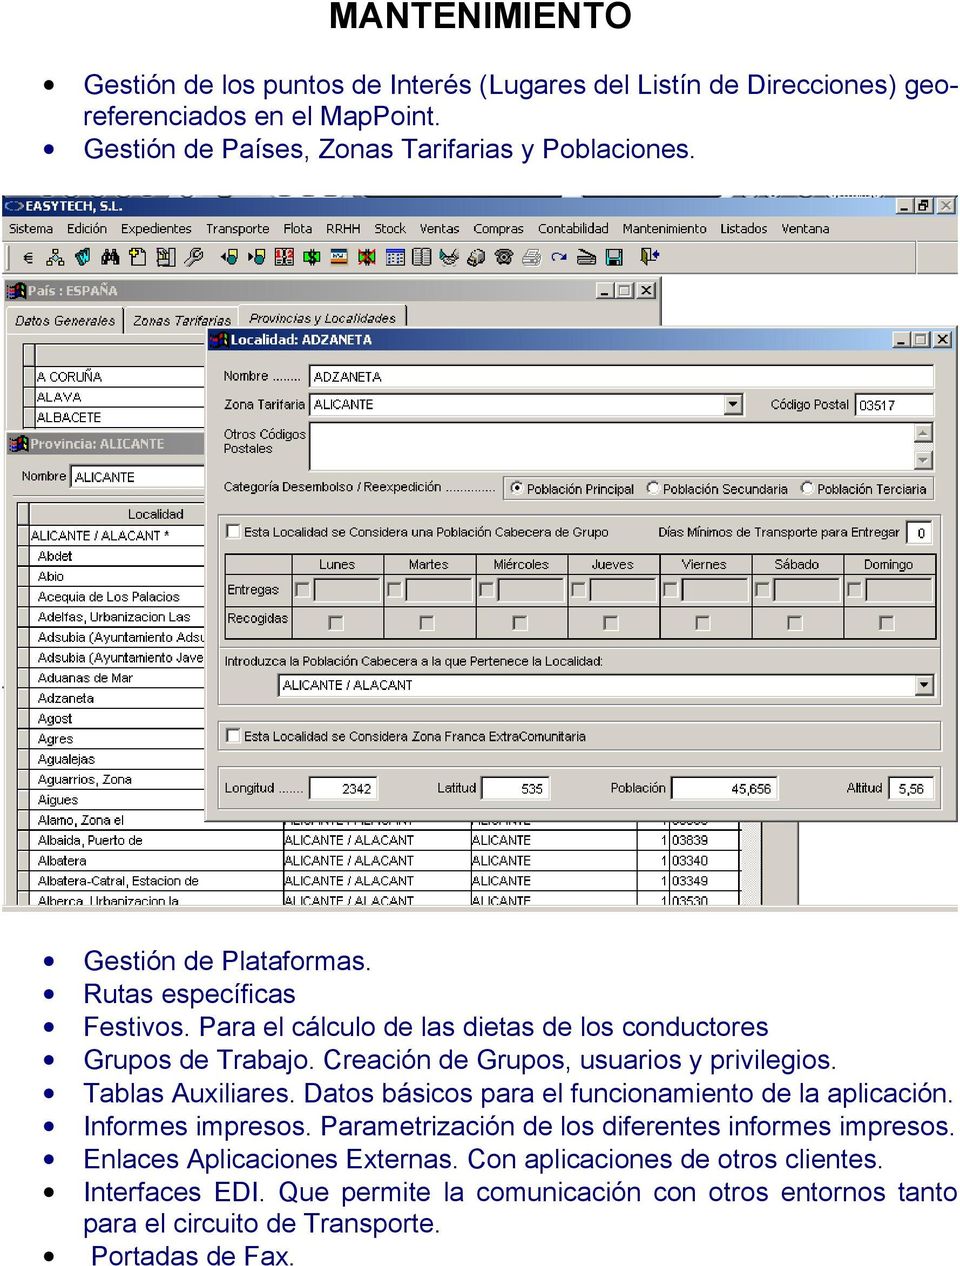 Tablas Auxiliares. Datos básicos para el funcionamiento de la aplicación. Informes impresos. Parametrización de los diferentes informes impresos.